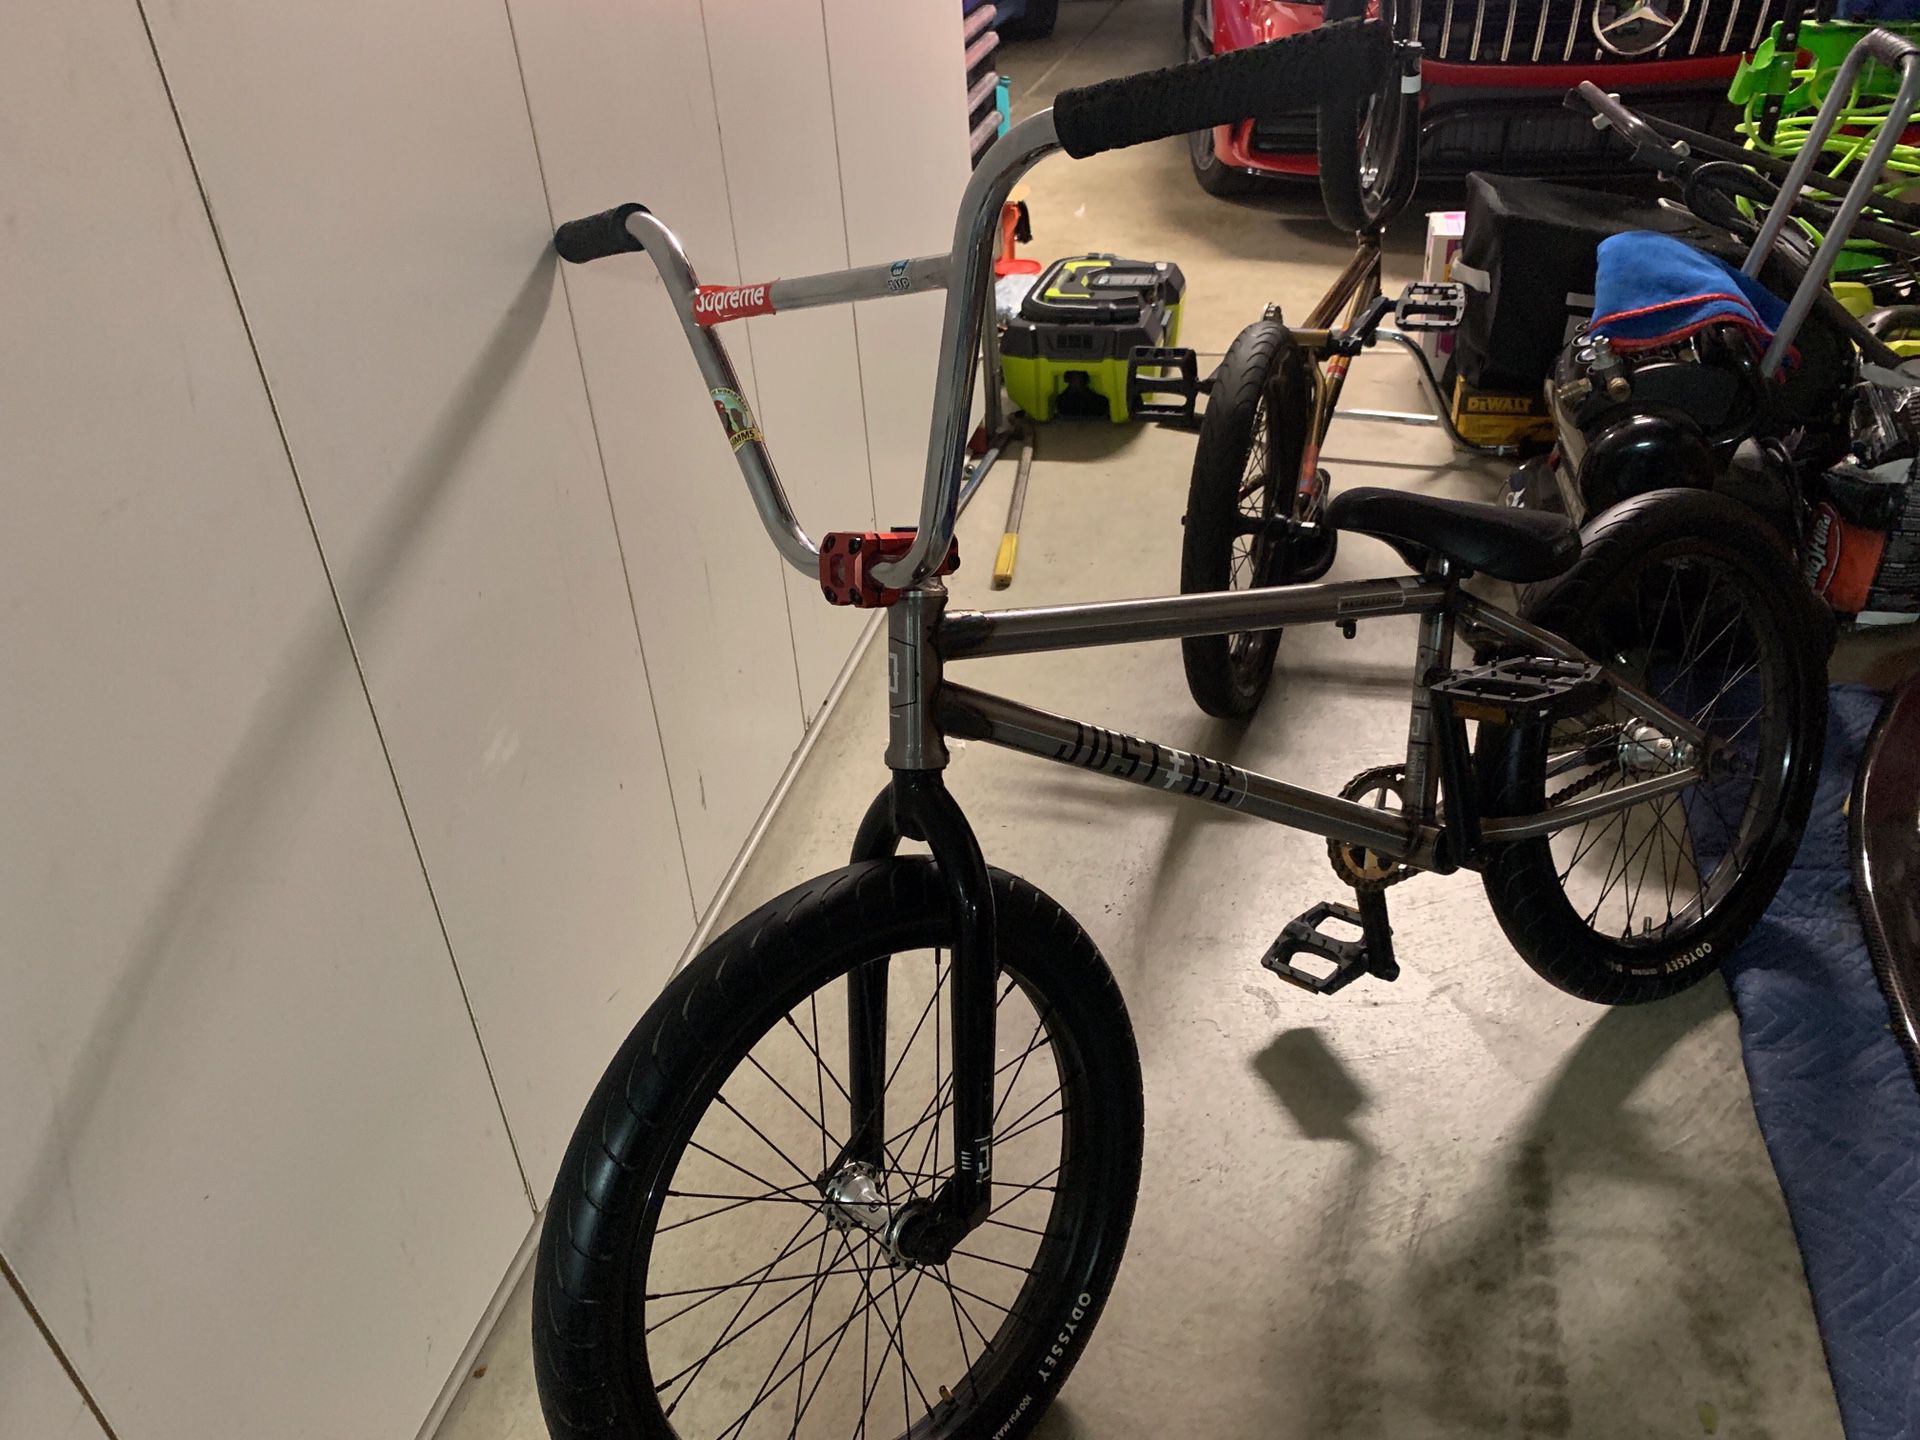 BMX Bike Custom